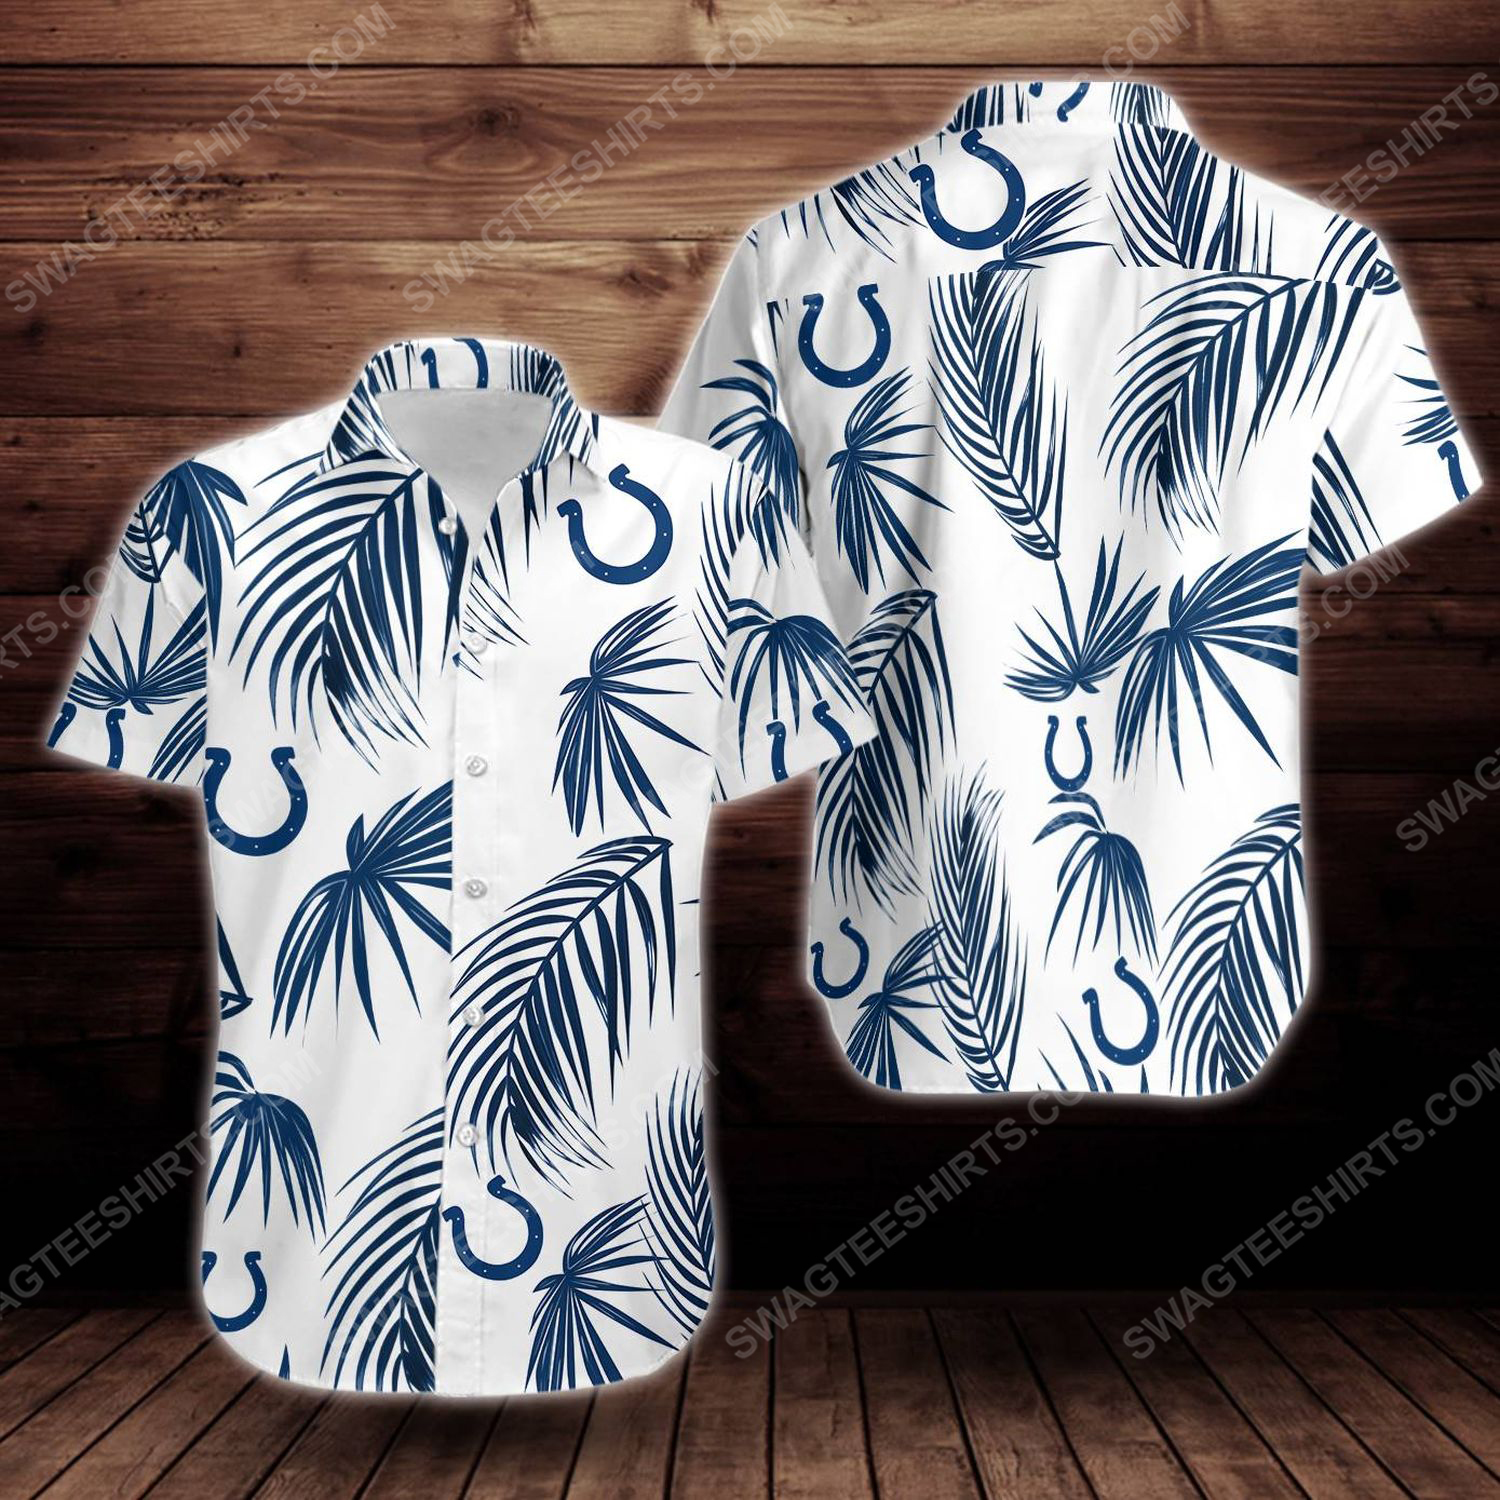 Tropical summer indianapolis colts short sleeve hawaiian shirt 1